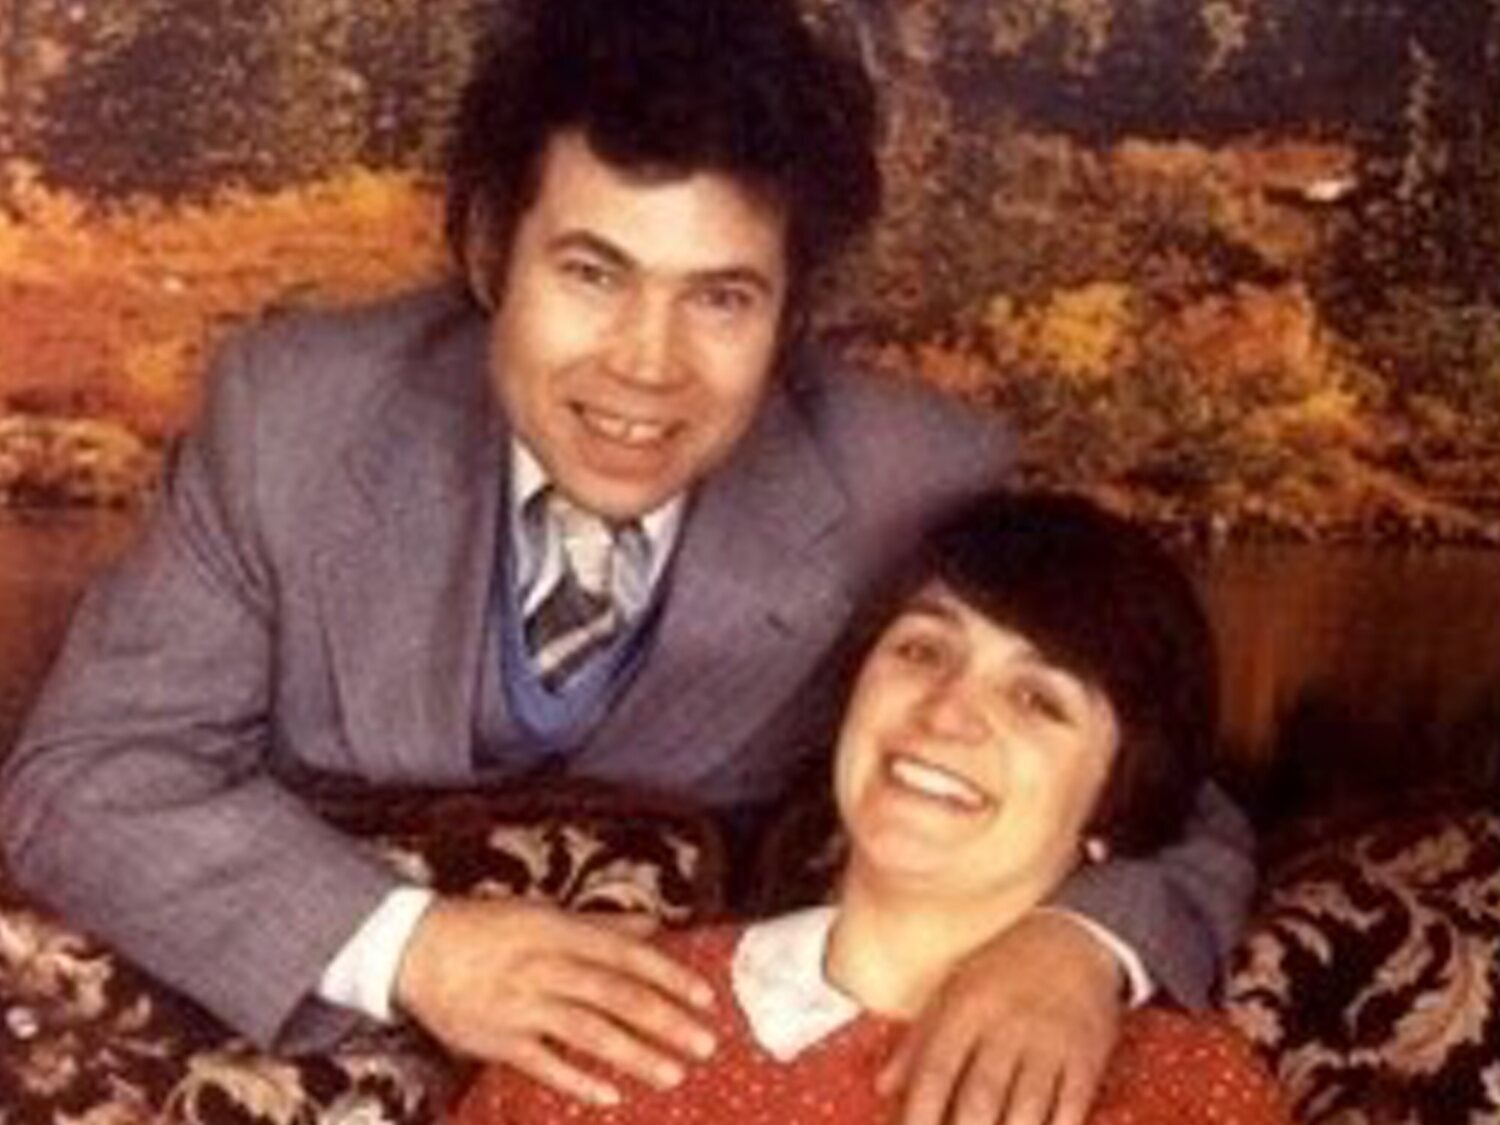 Fred y Rosemary: el 'amable' matrimonio que escondía dos décadas de incestos, violaciones y asesinatos